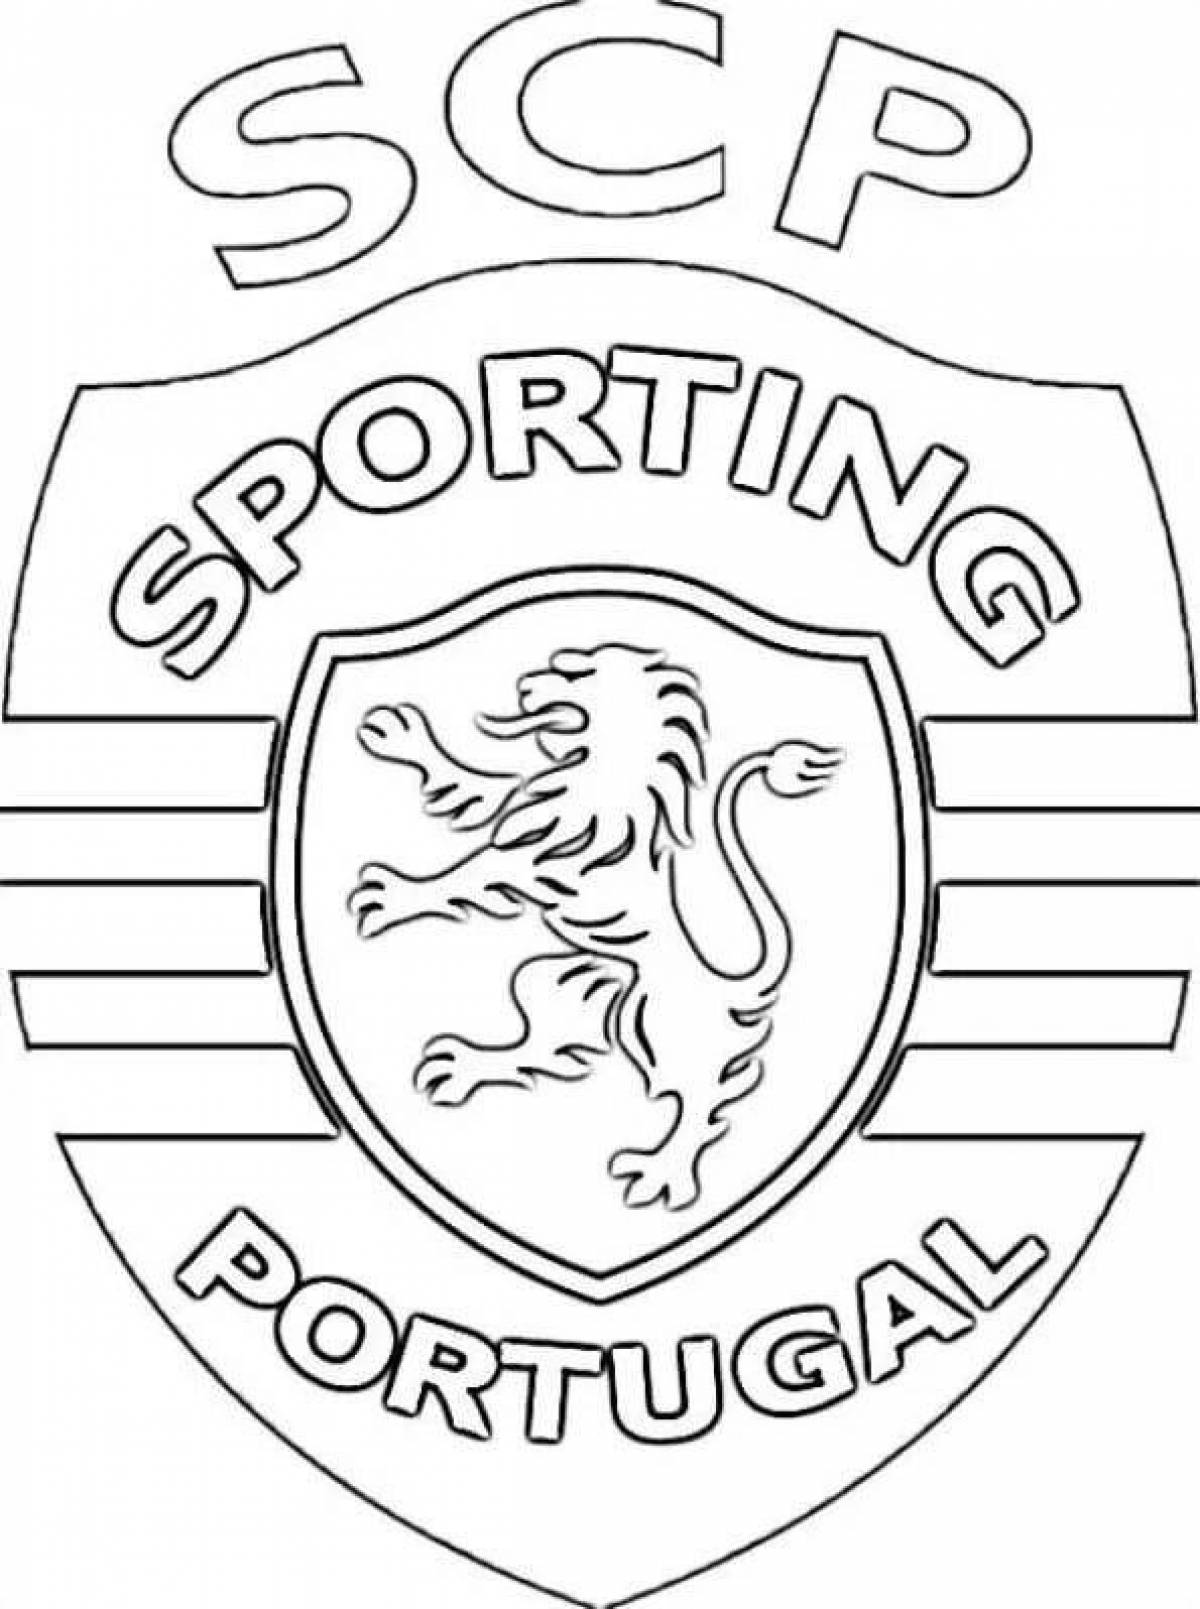 Раскраска эмблемы футбольных клубов